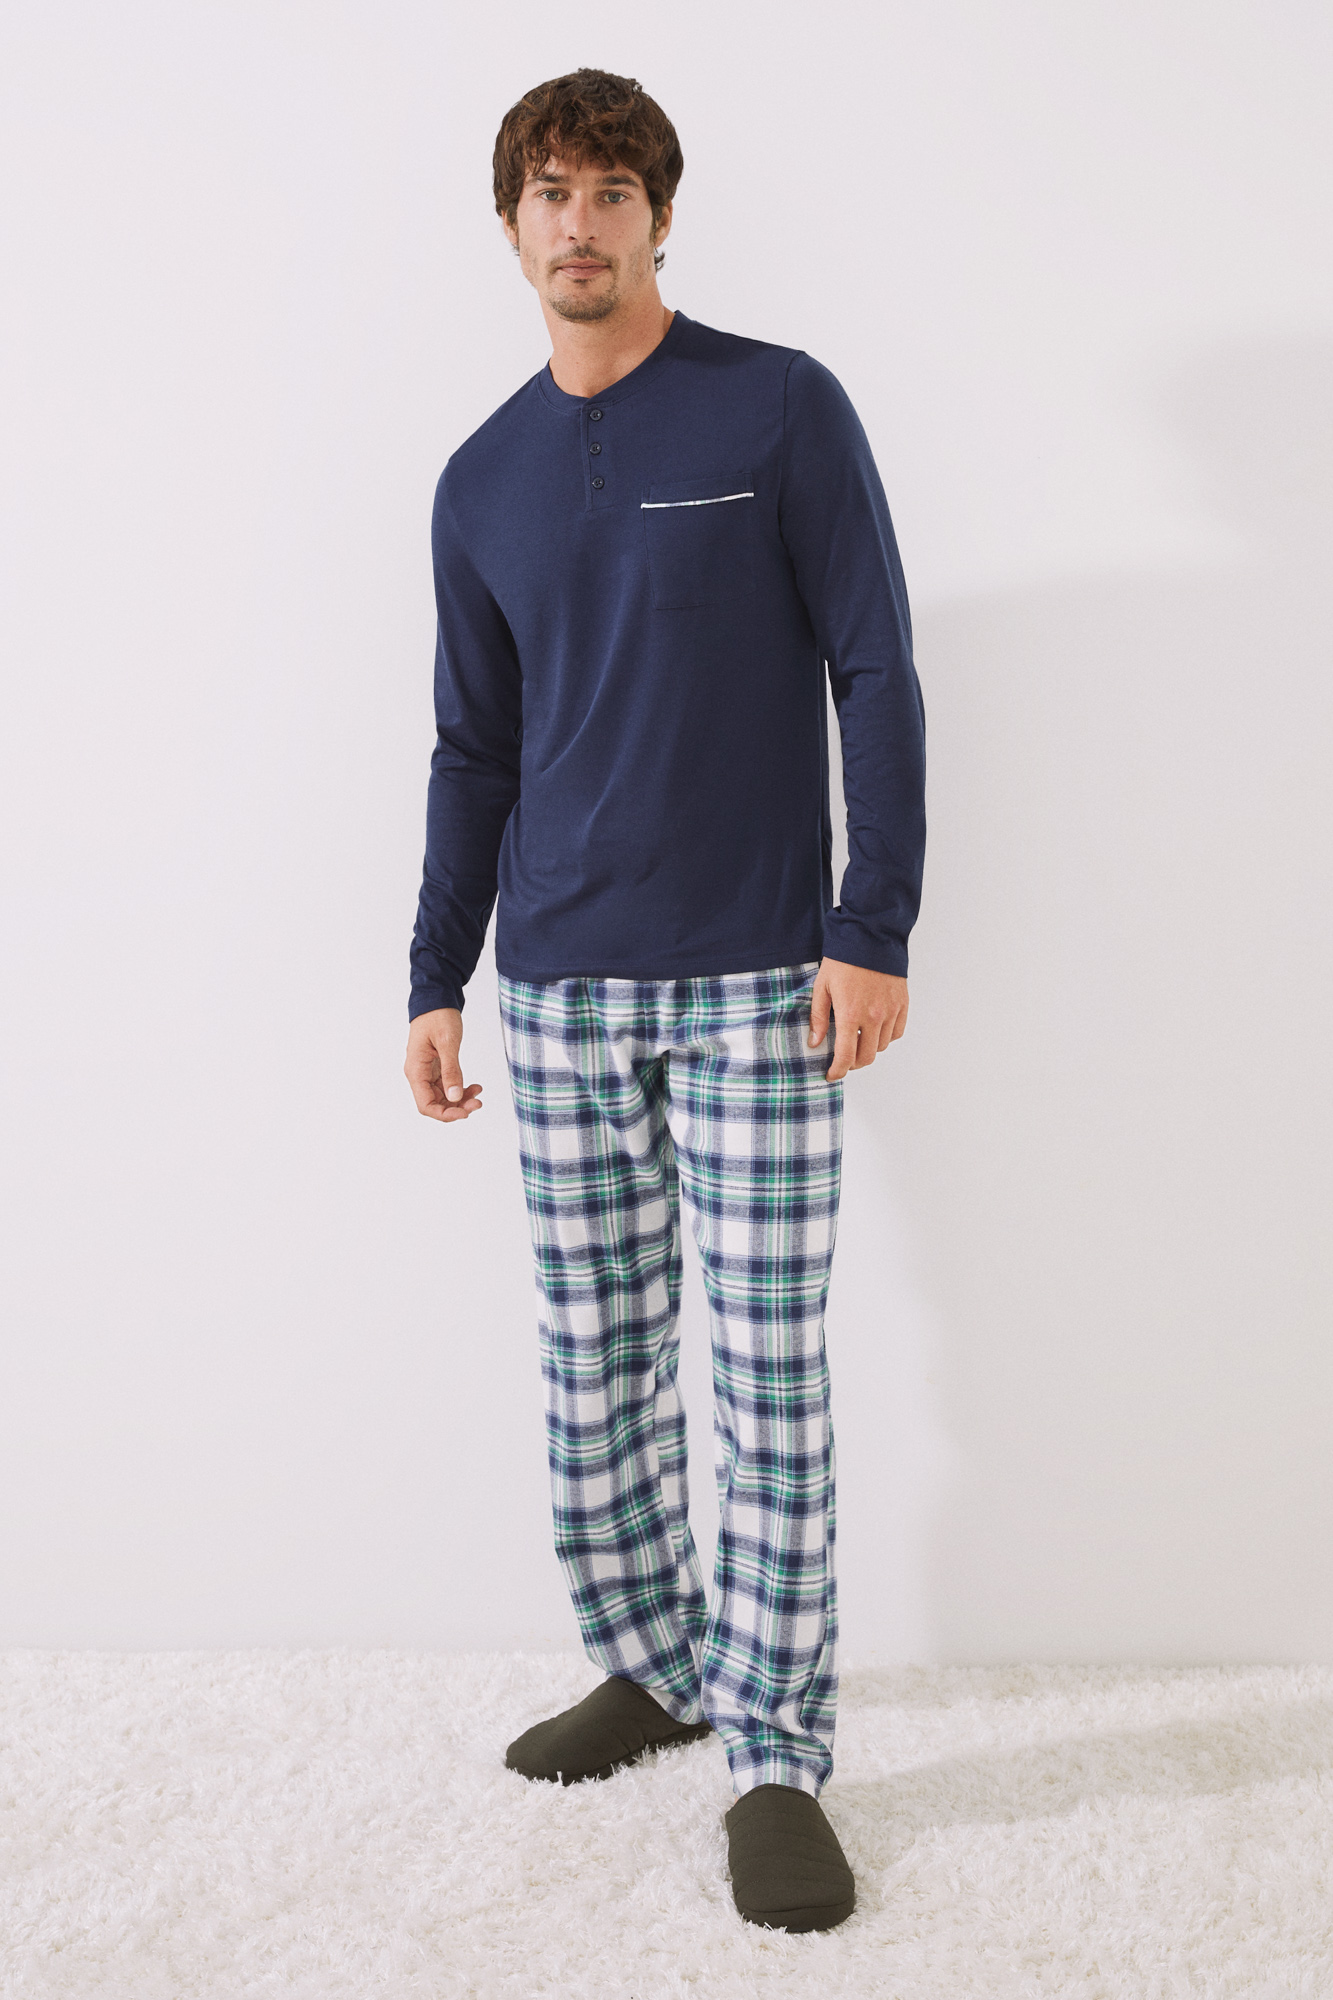 Pijamas hombre algodón originales 【hechos en España】Apunto